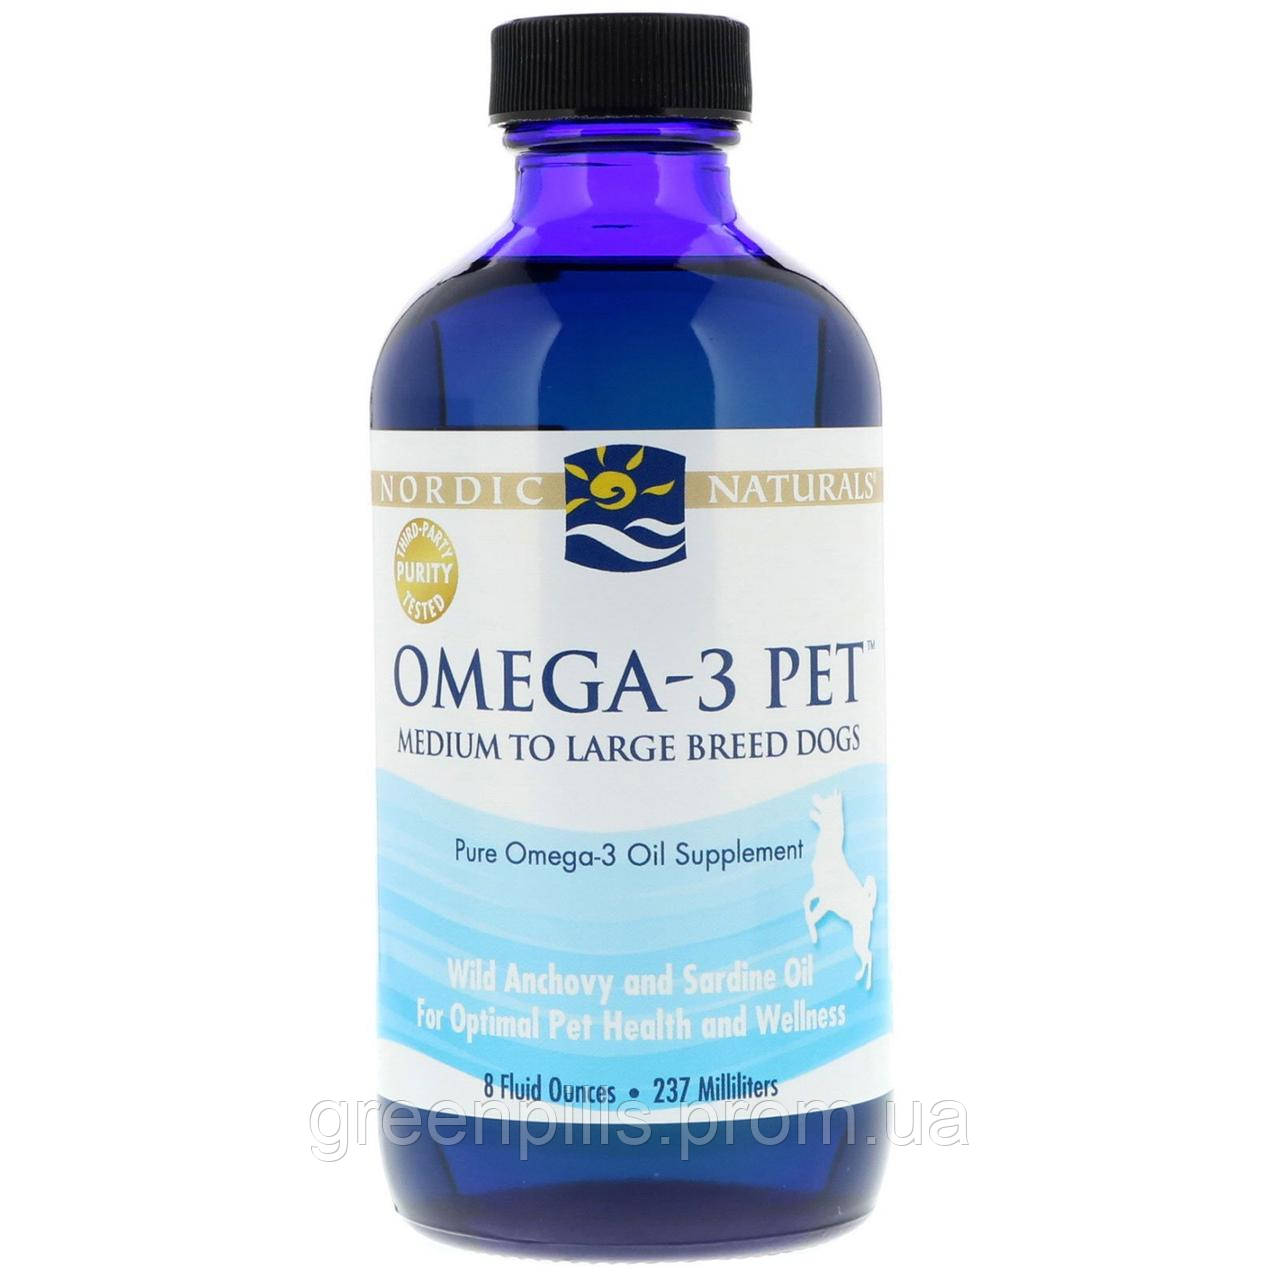 

Nordic Naturals, Omega-3 Pet, 8 fl oz (237 ml)